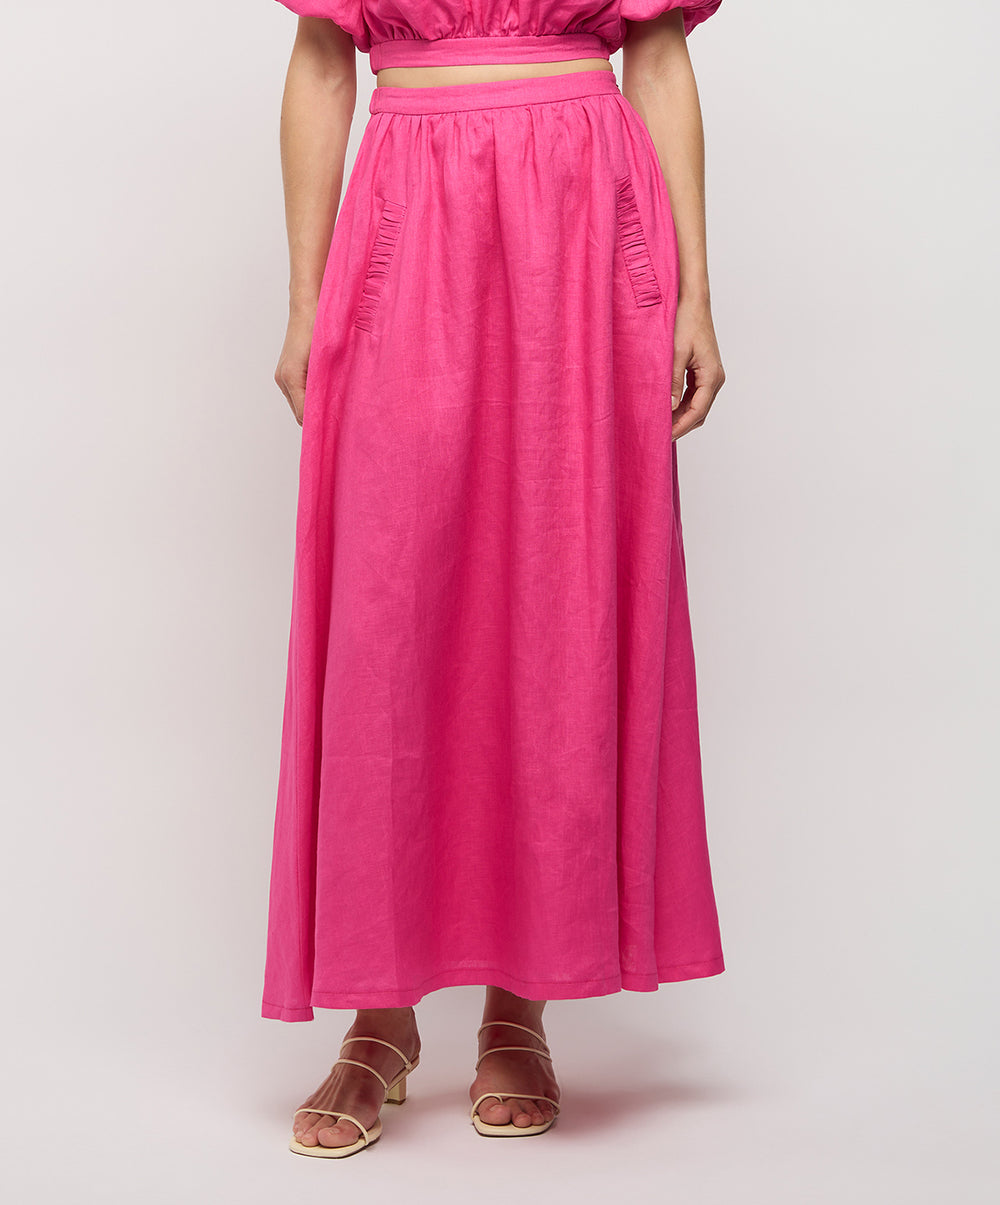 Adoni Linen Skirt